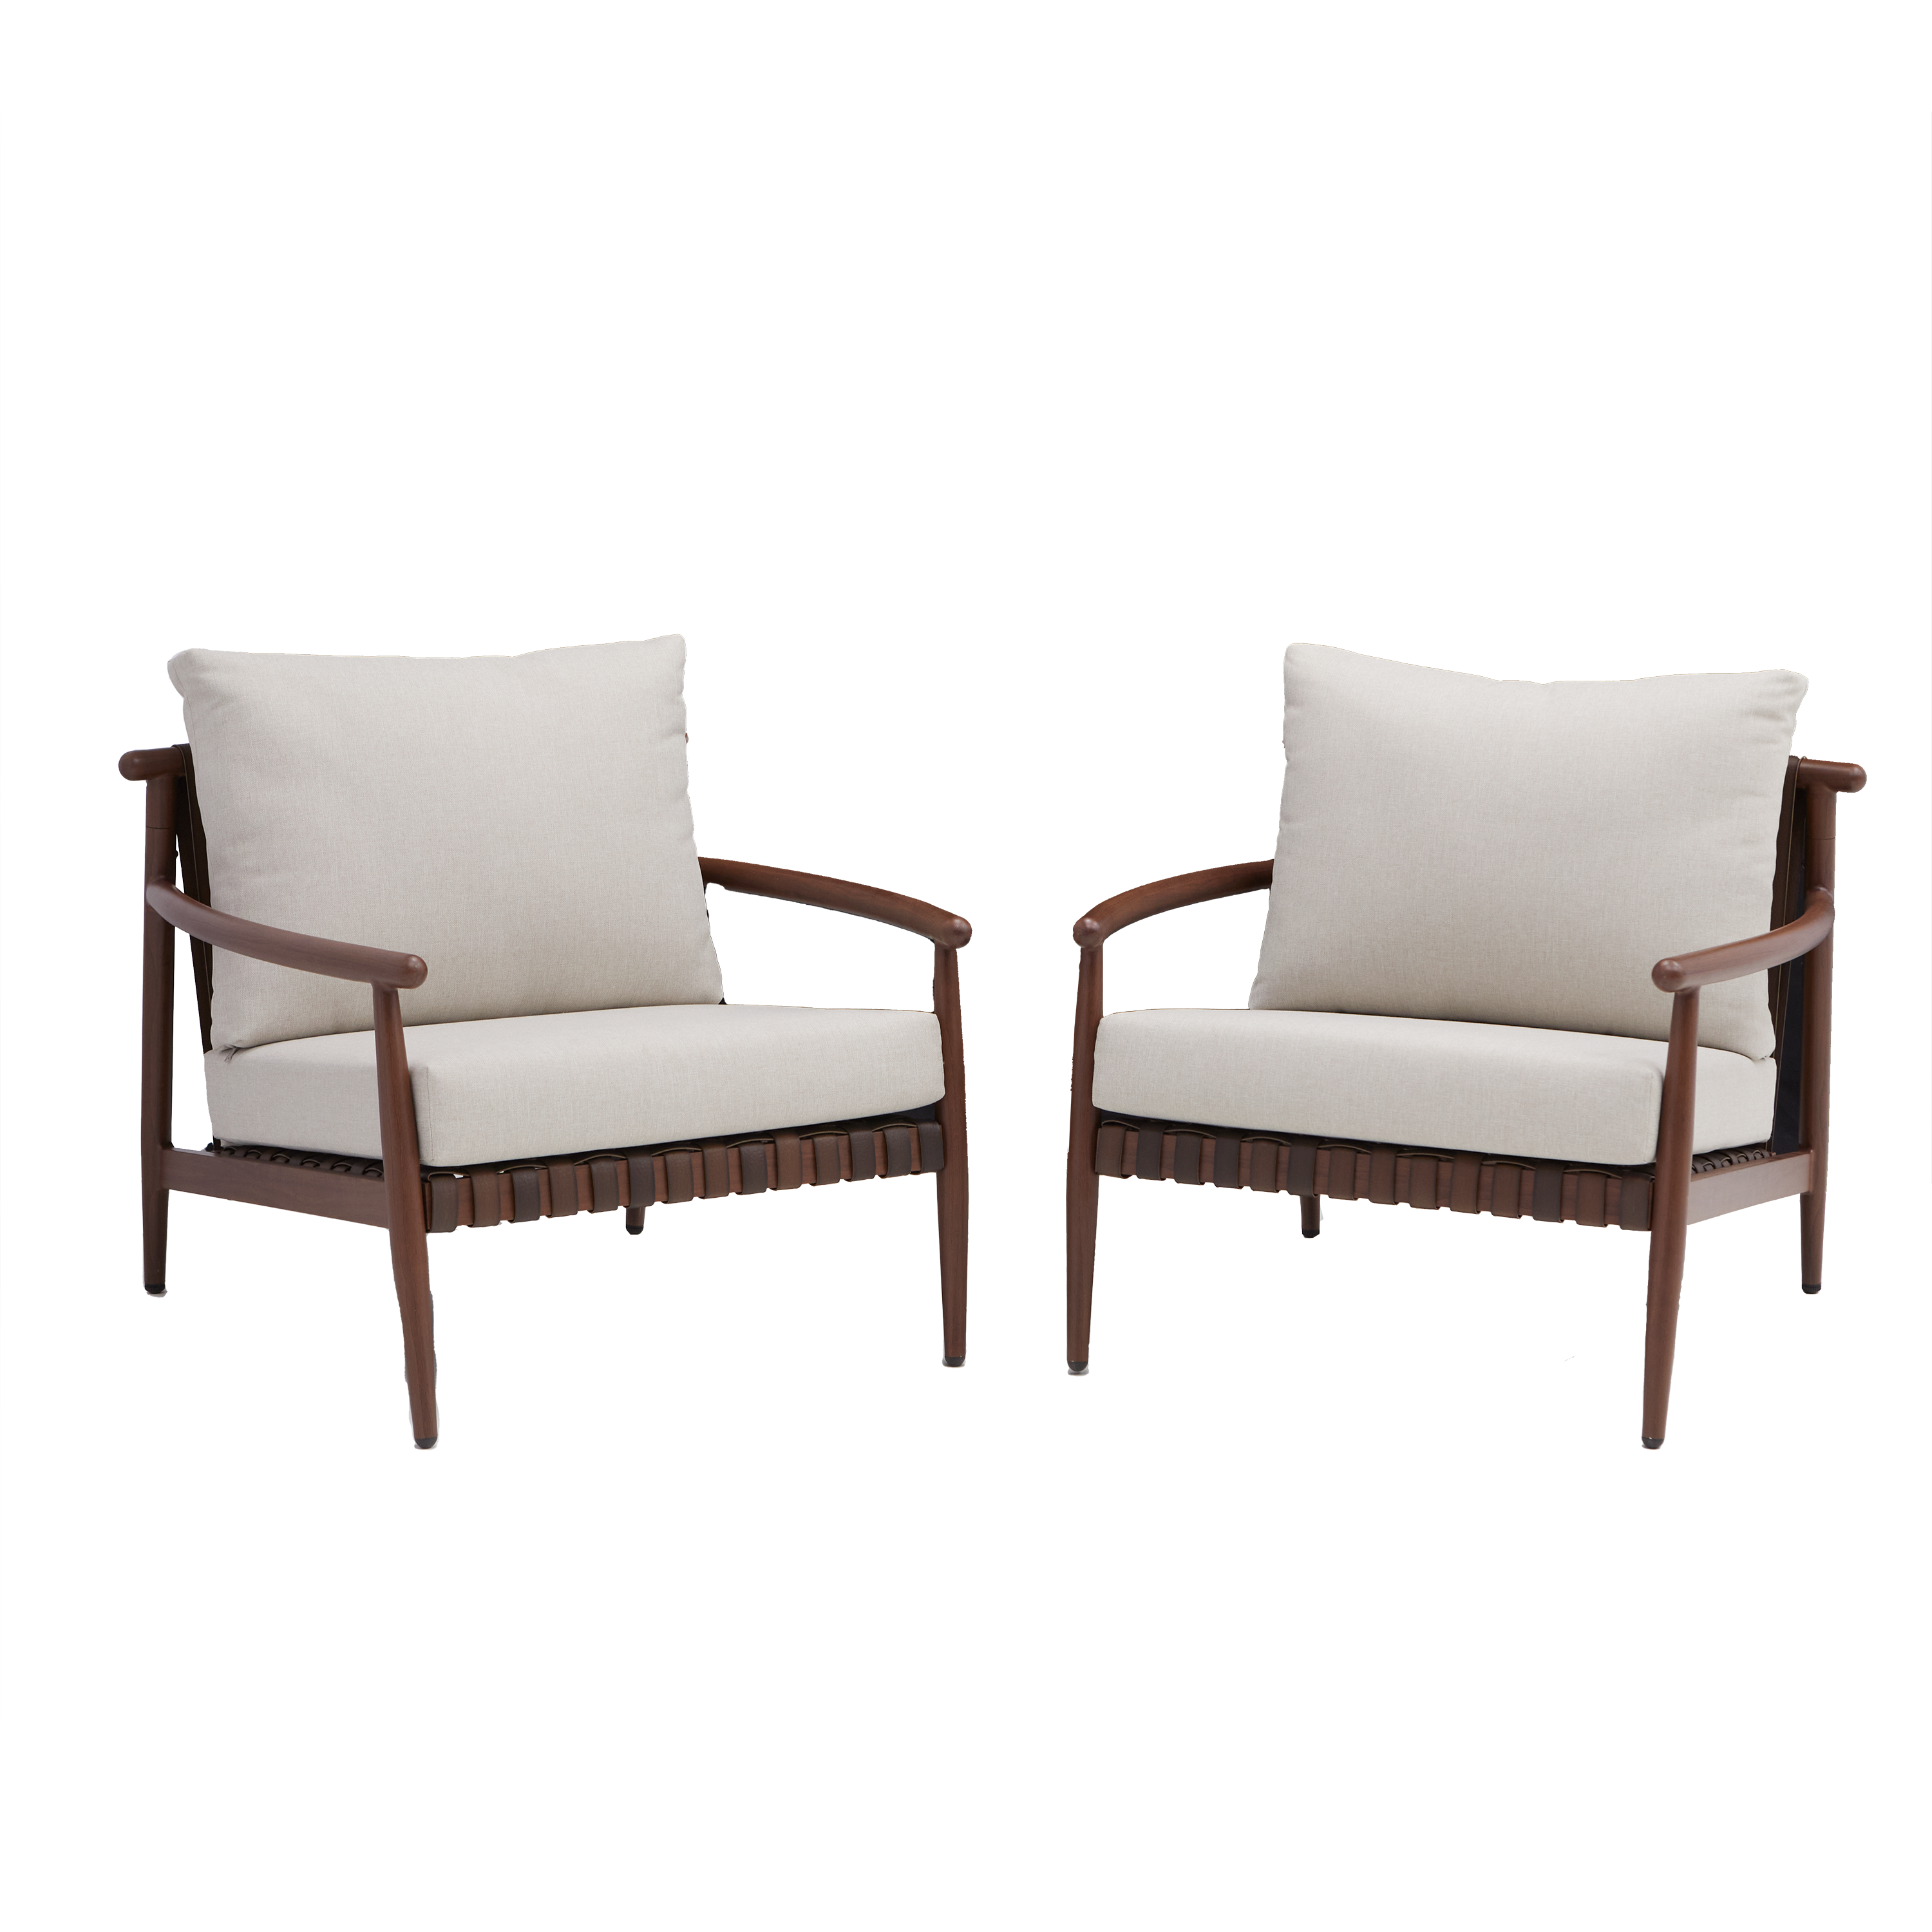 Набор садовой мебели Naterial Retro алюминий цвет коричневый кресло - 2 шт.